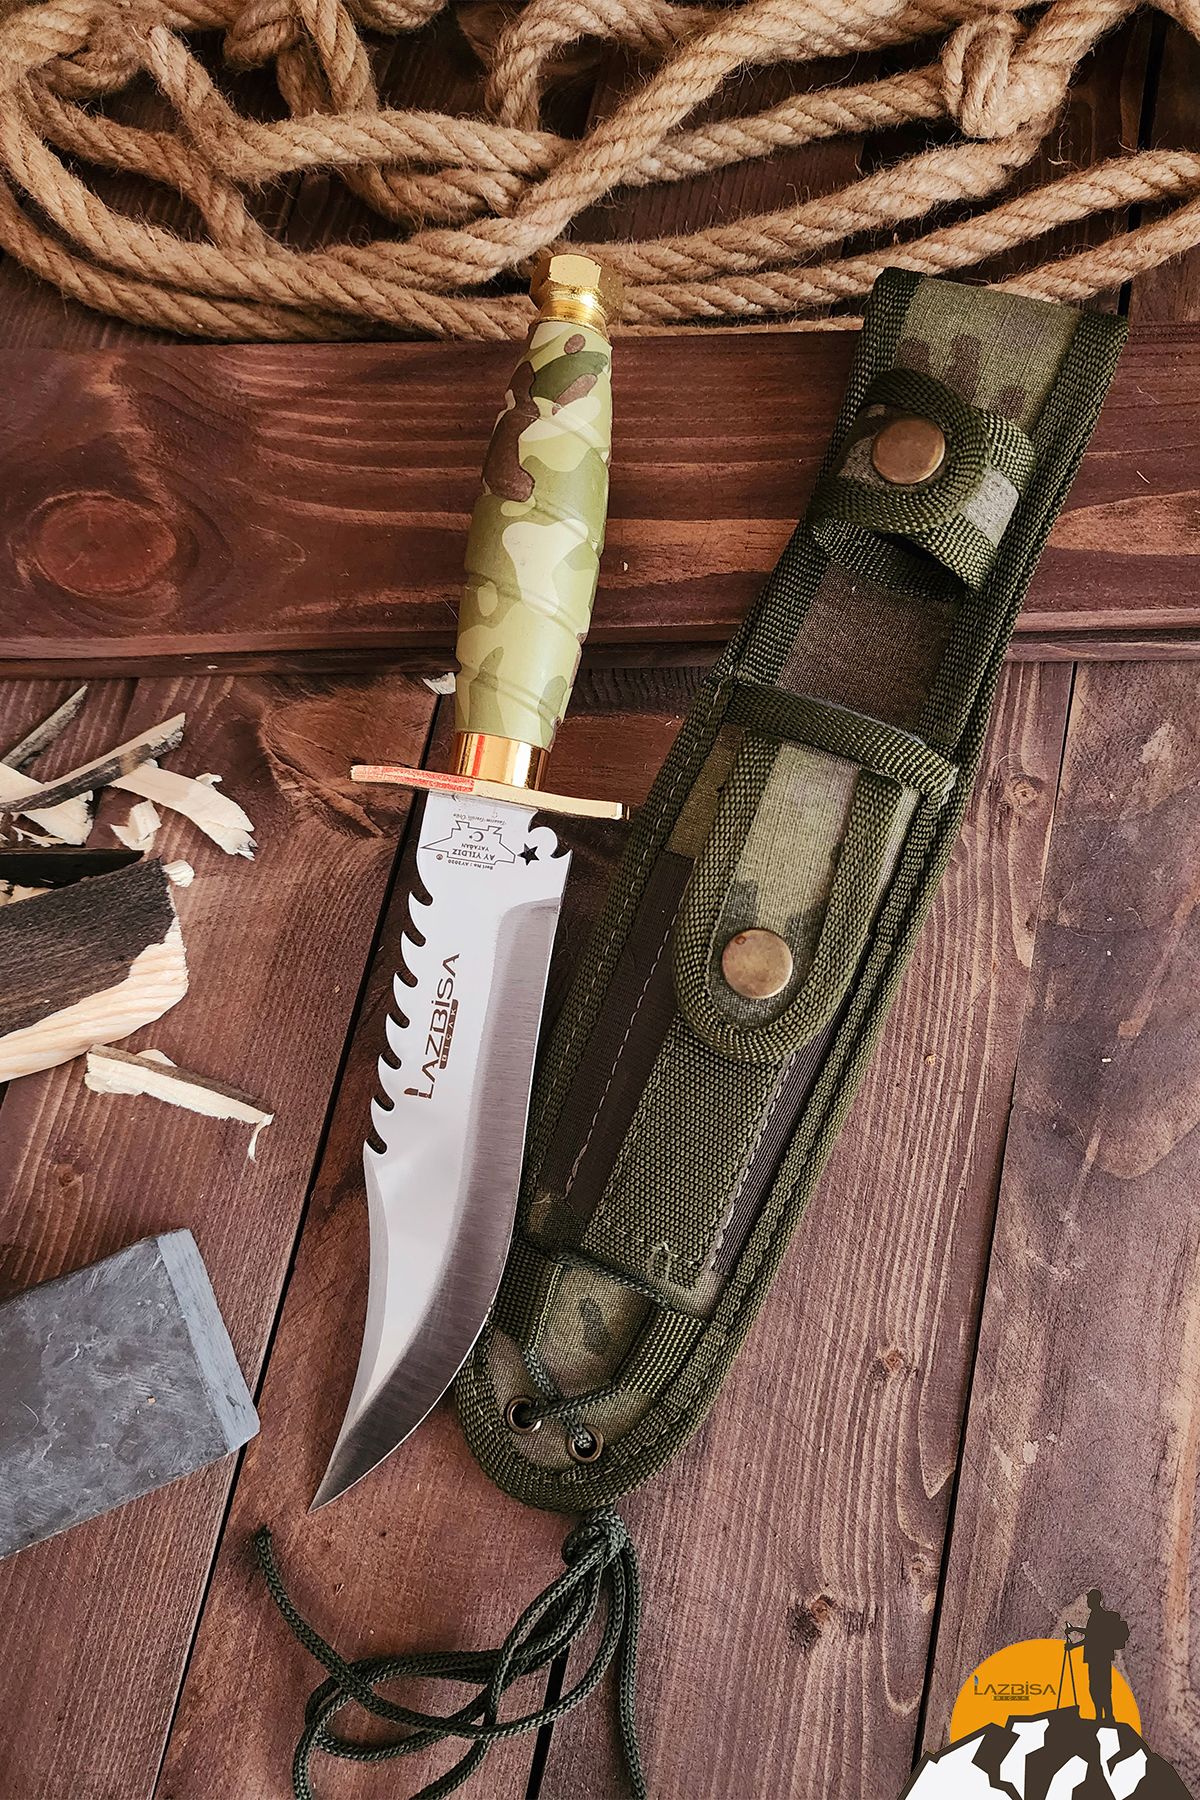 LAZBİSA Outdoor Piknik Kamp Bıçağı Bıçak Çakısı Mutfak Bıçak Kılıflı El Yapımı ( KMDLZ01 )